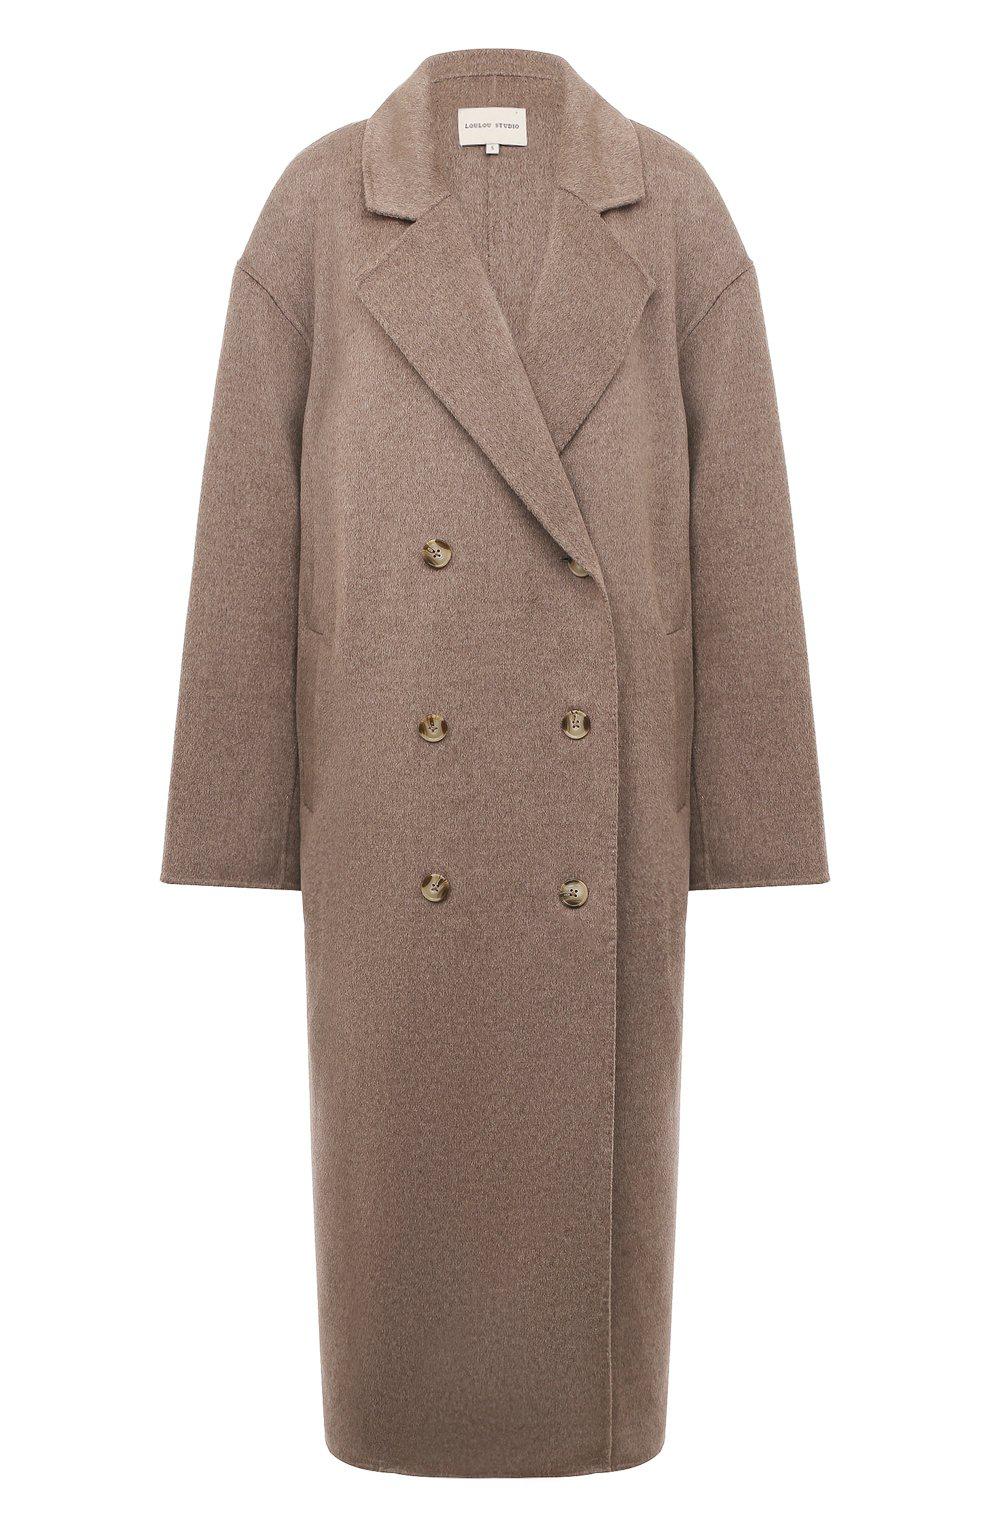 Пальто из шерсти и кашемира, Loulou Studio, 99 500 руб.